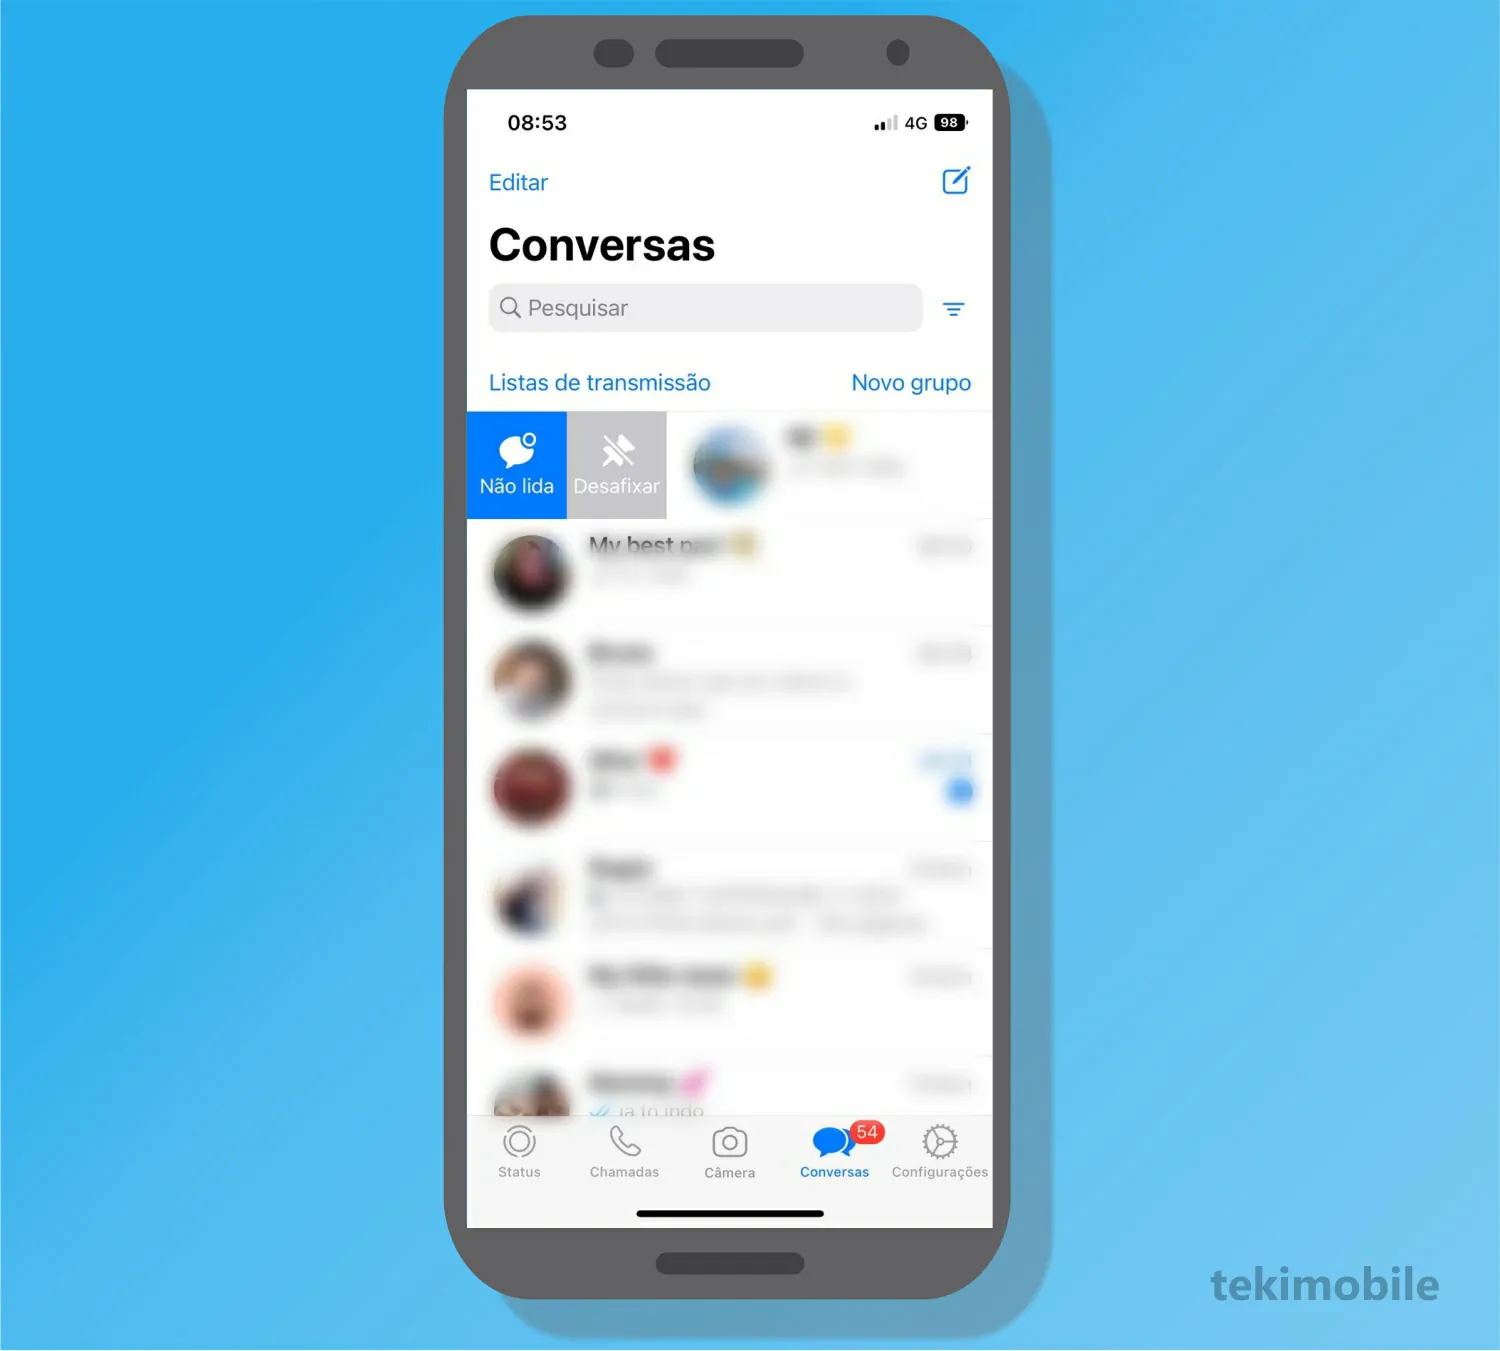 Toque sobre a opção de Desafixar - Como fixar conversa no whatsapp iPhone